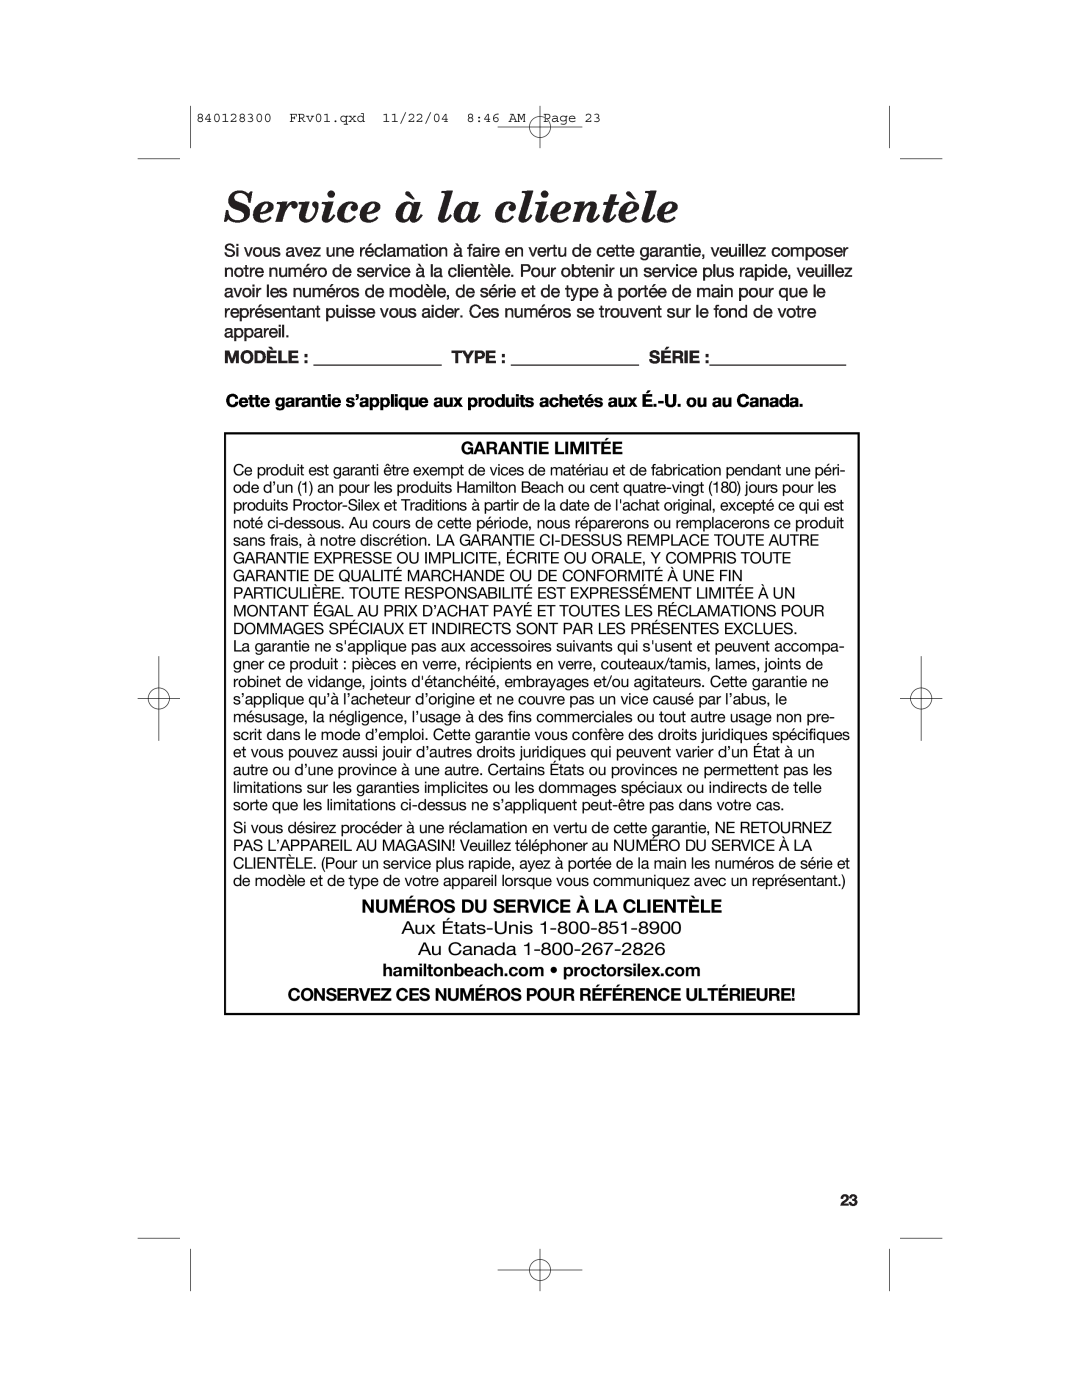 Hamilton Beach 68330 manual Service à la clientèle, Numéros Du Service À La Clientèle, Garantie Limitée 